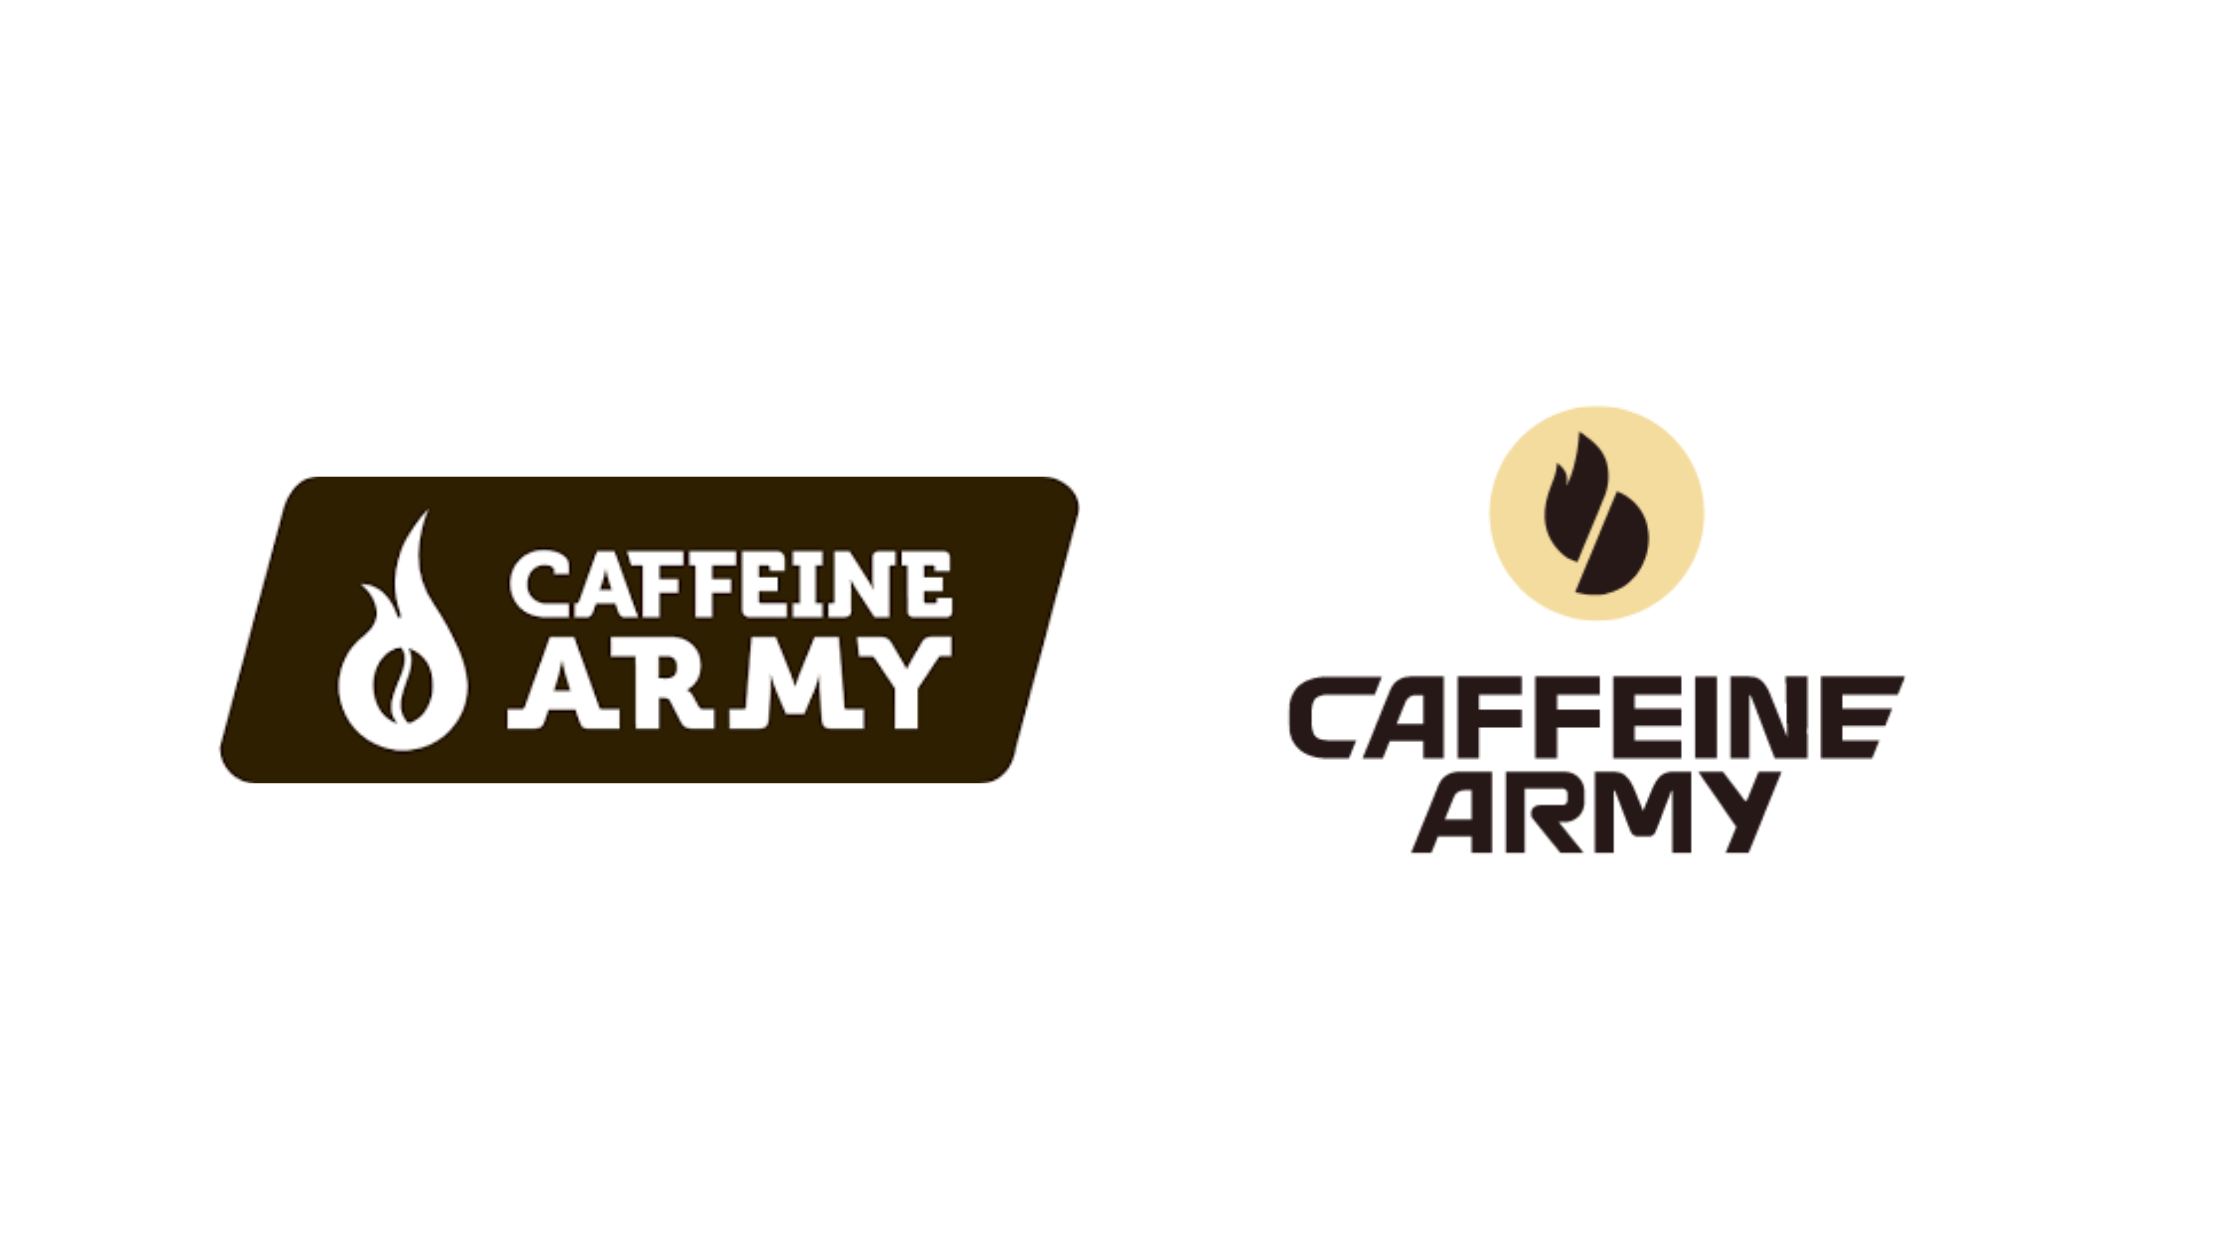 Caffeine Army OFERECE EMPREGOS no Nordeste